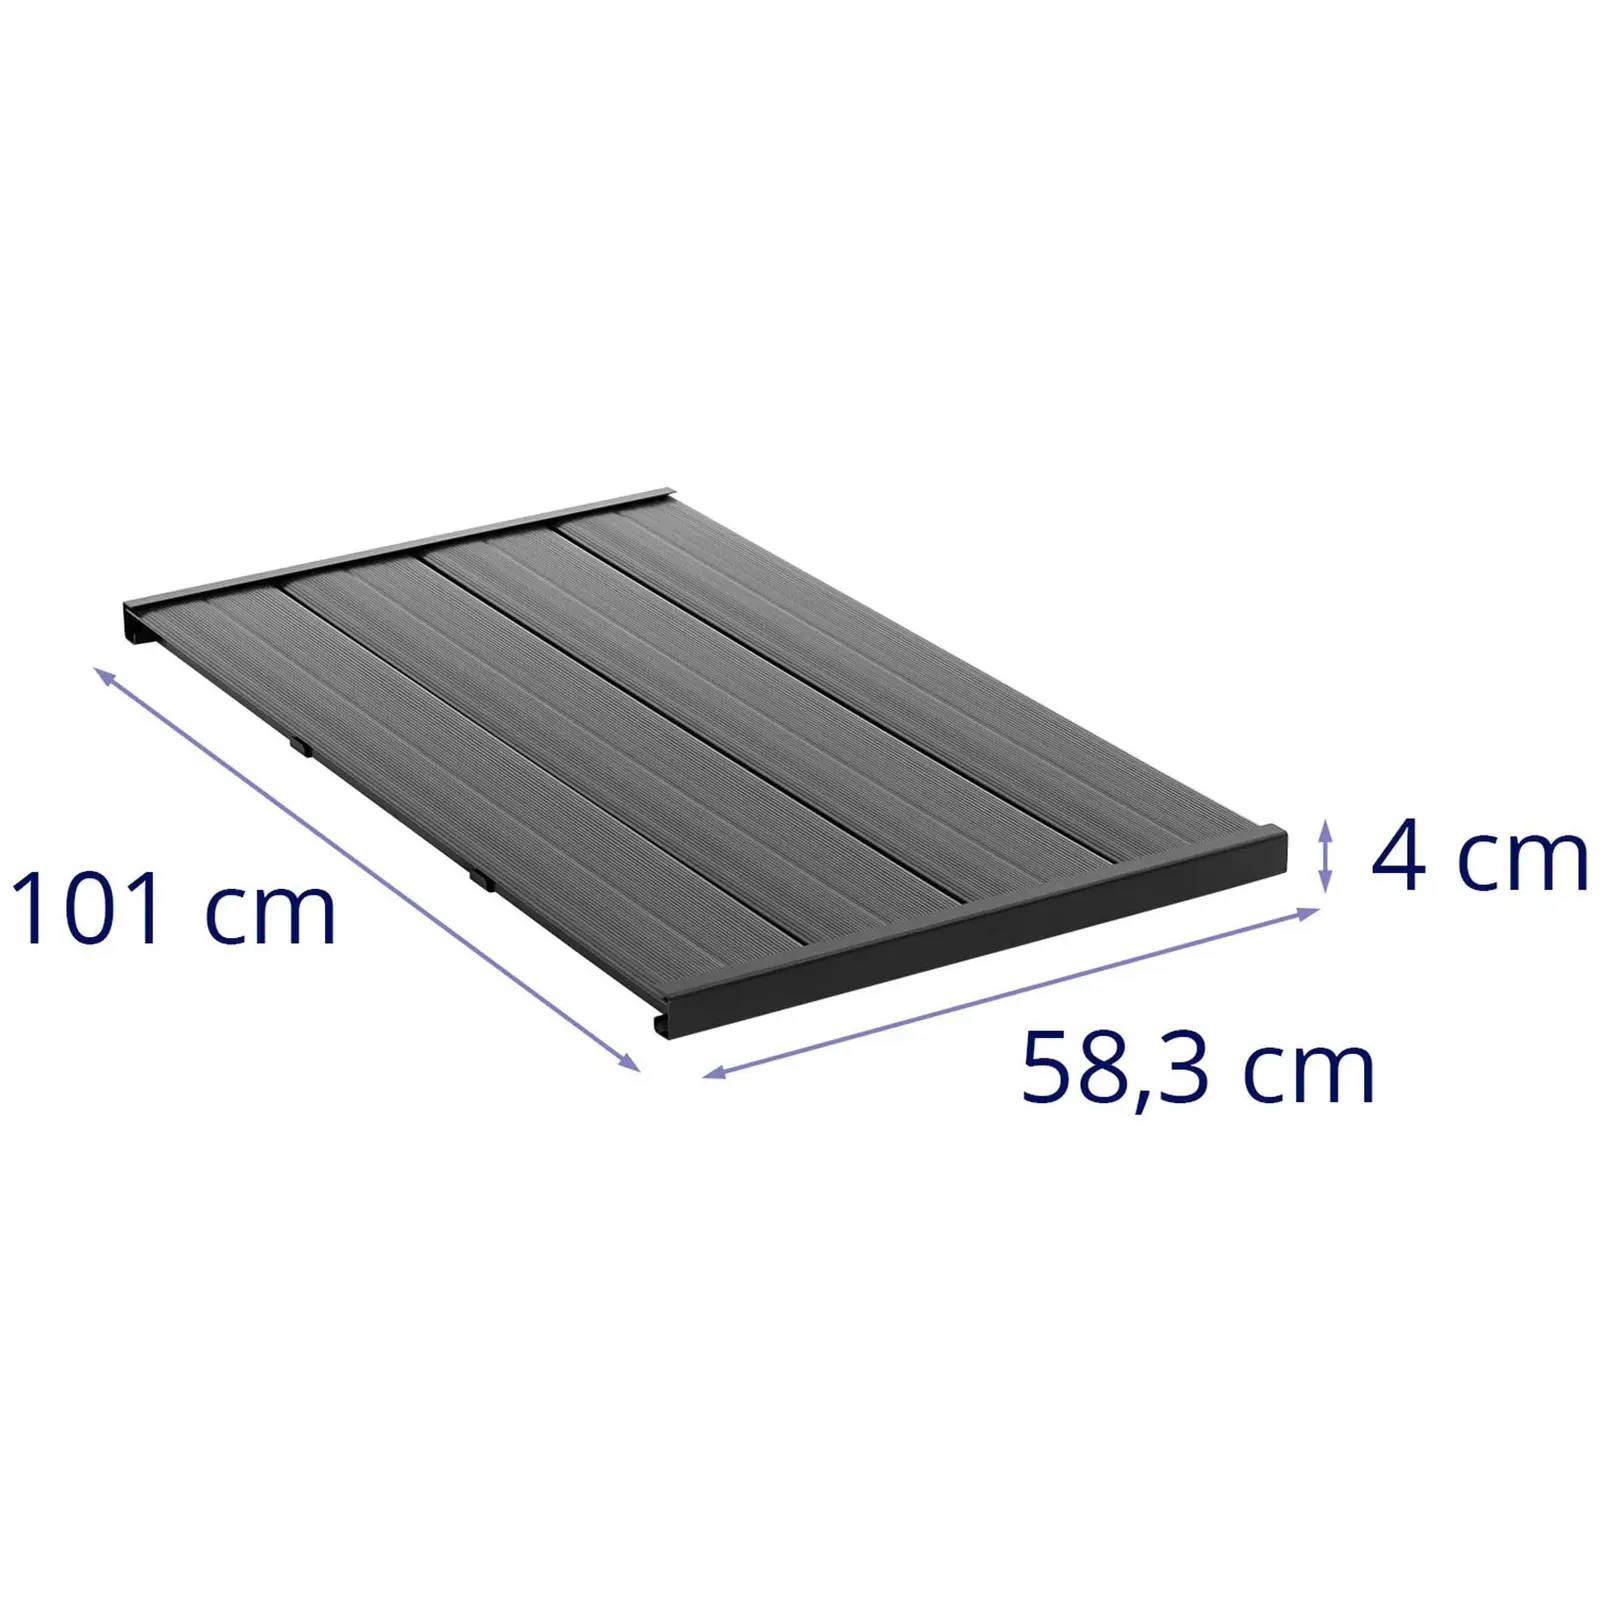 Gartendusche Bodenplatte - 101 x 58.3 x 4 cm